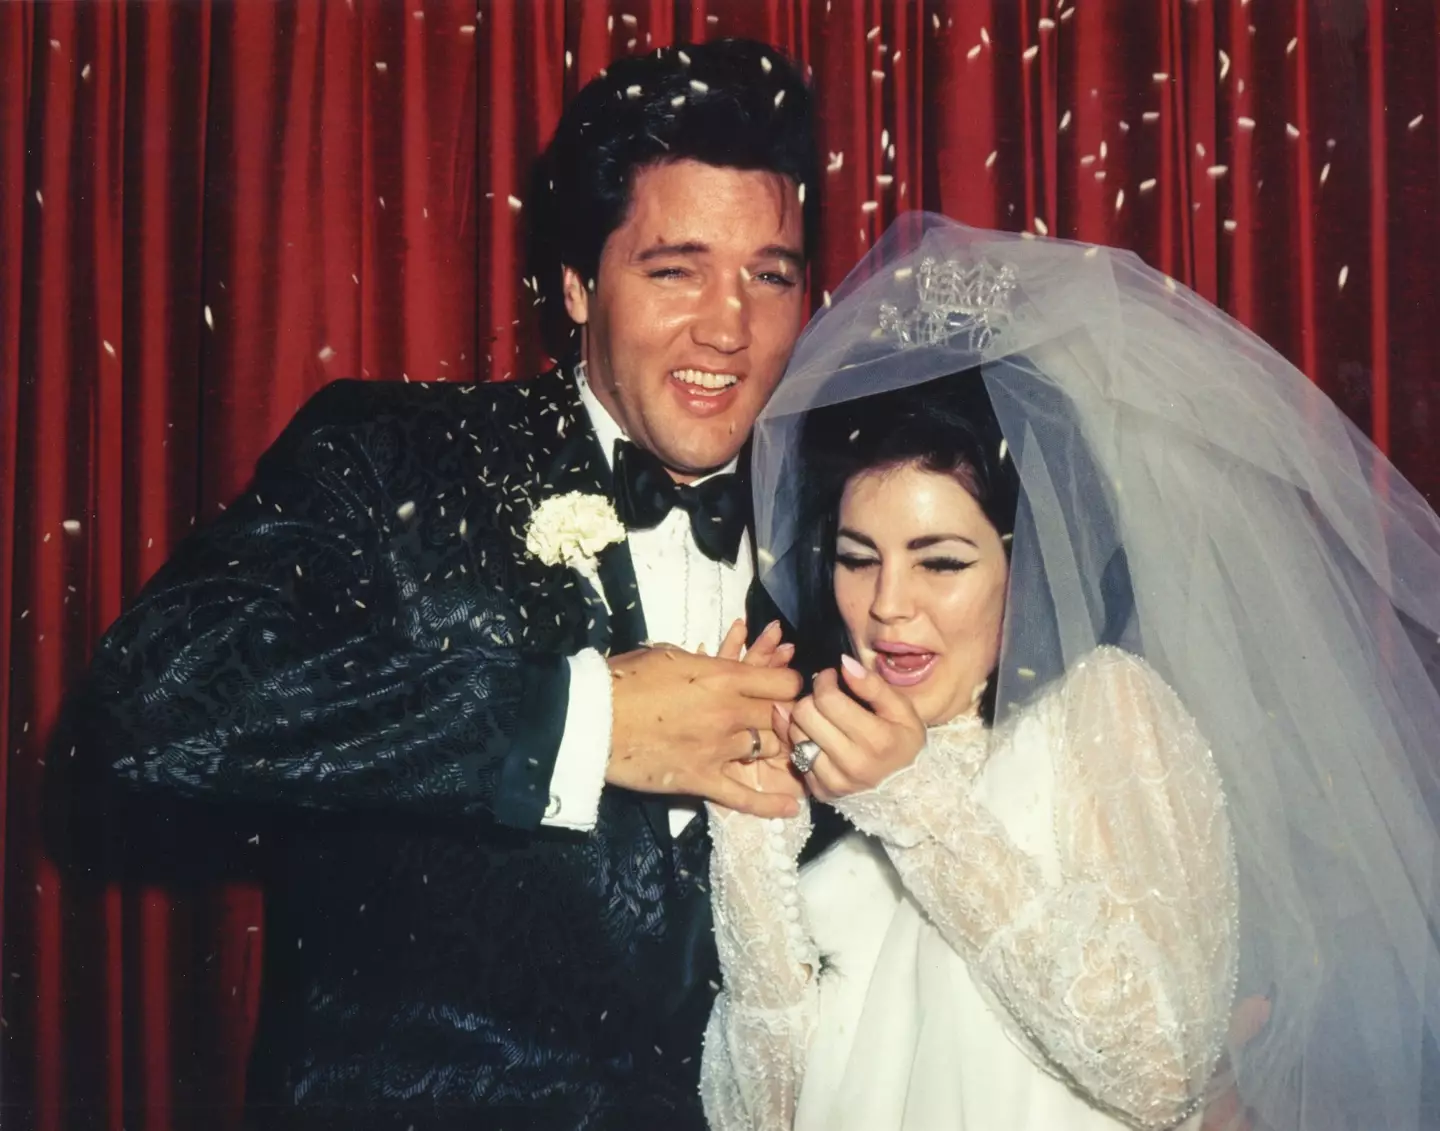 Elvis Presley & Priscilla Presley at their wedding in 1967.